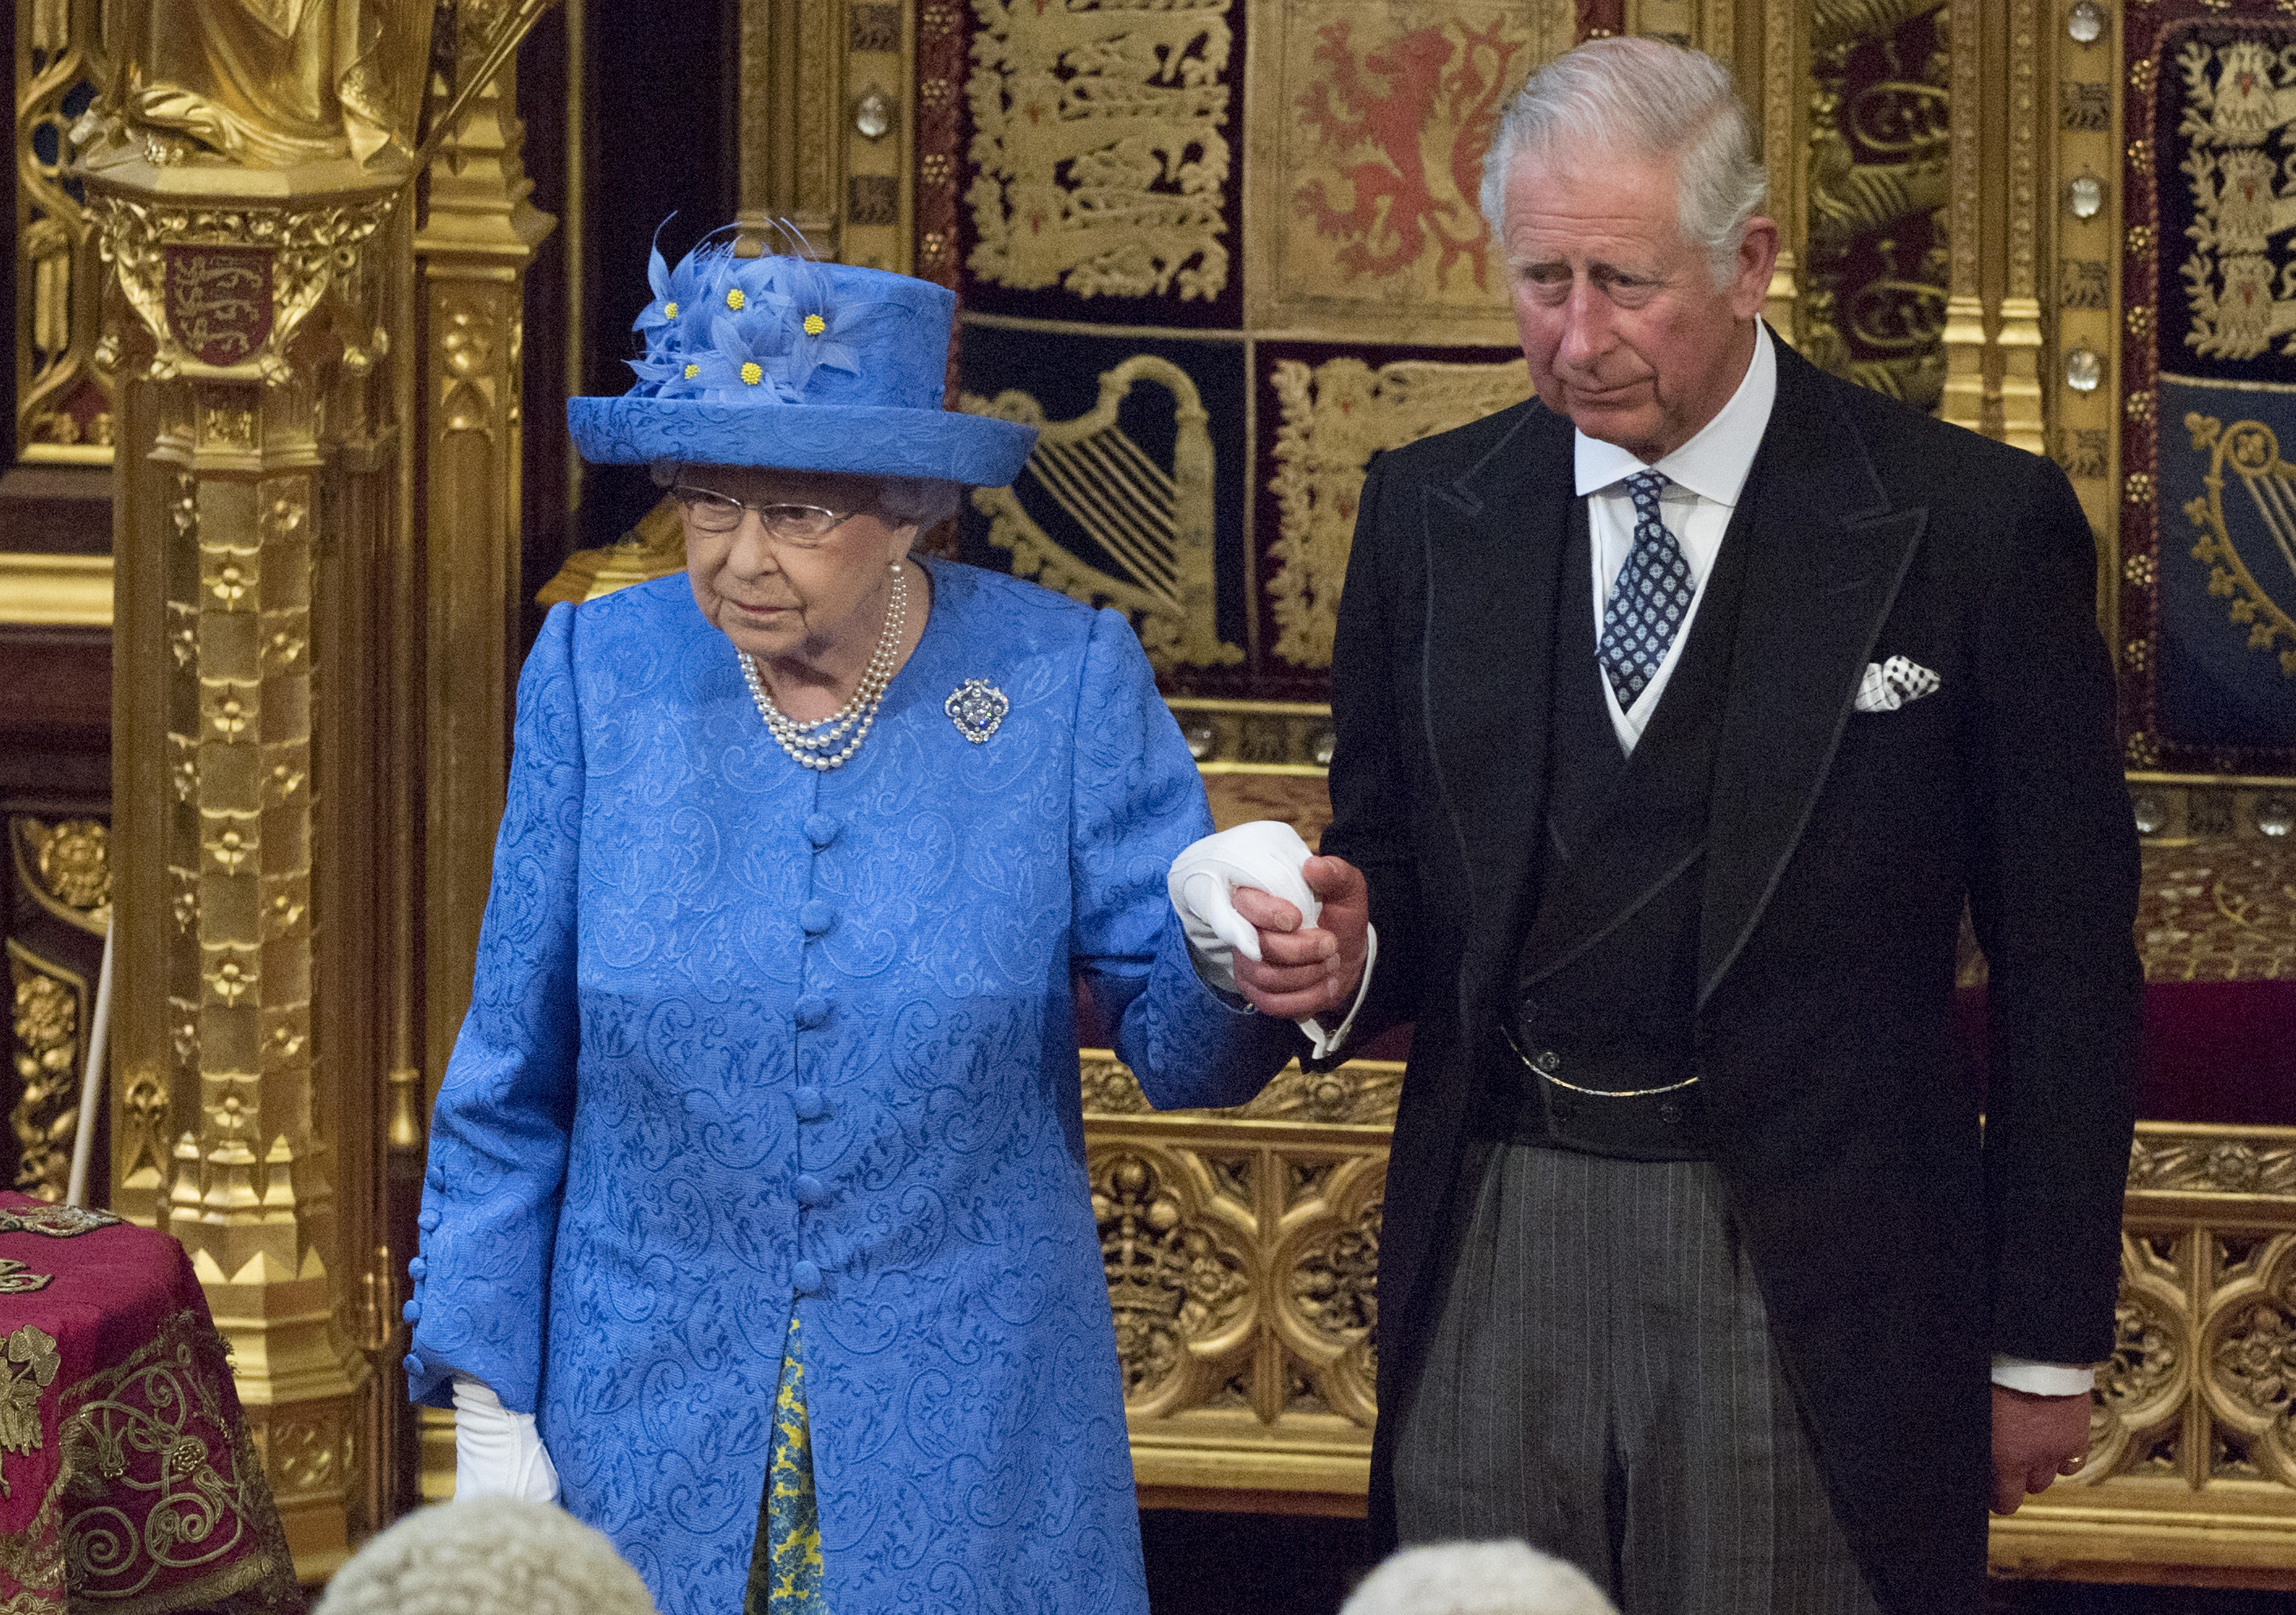 Кралица Елизабет II винаги е била добре известна с това, че обича да носи различни шапки, когато има важни публични събития, на които присъства.Вчера (21.06) британската кралица откри парламента. По време на традиционното откриване не принц Филип я придружаваше, а принц Чарлз. Малко по-рано стана ясно, че съпругът на британската кралица е приет в болница като „предпазна мярка“ заради инфекция, съобщиха от Бъкингамския дворец.Не само речта обаче направи голямото впечатление, а нейната синя шапка, аранжирана с цветя, които силно напомниха на знамето на Европейския съюз (ЕС).